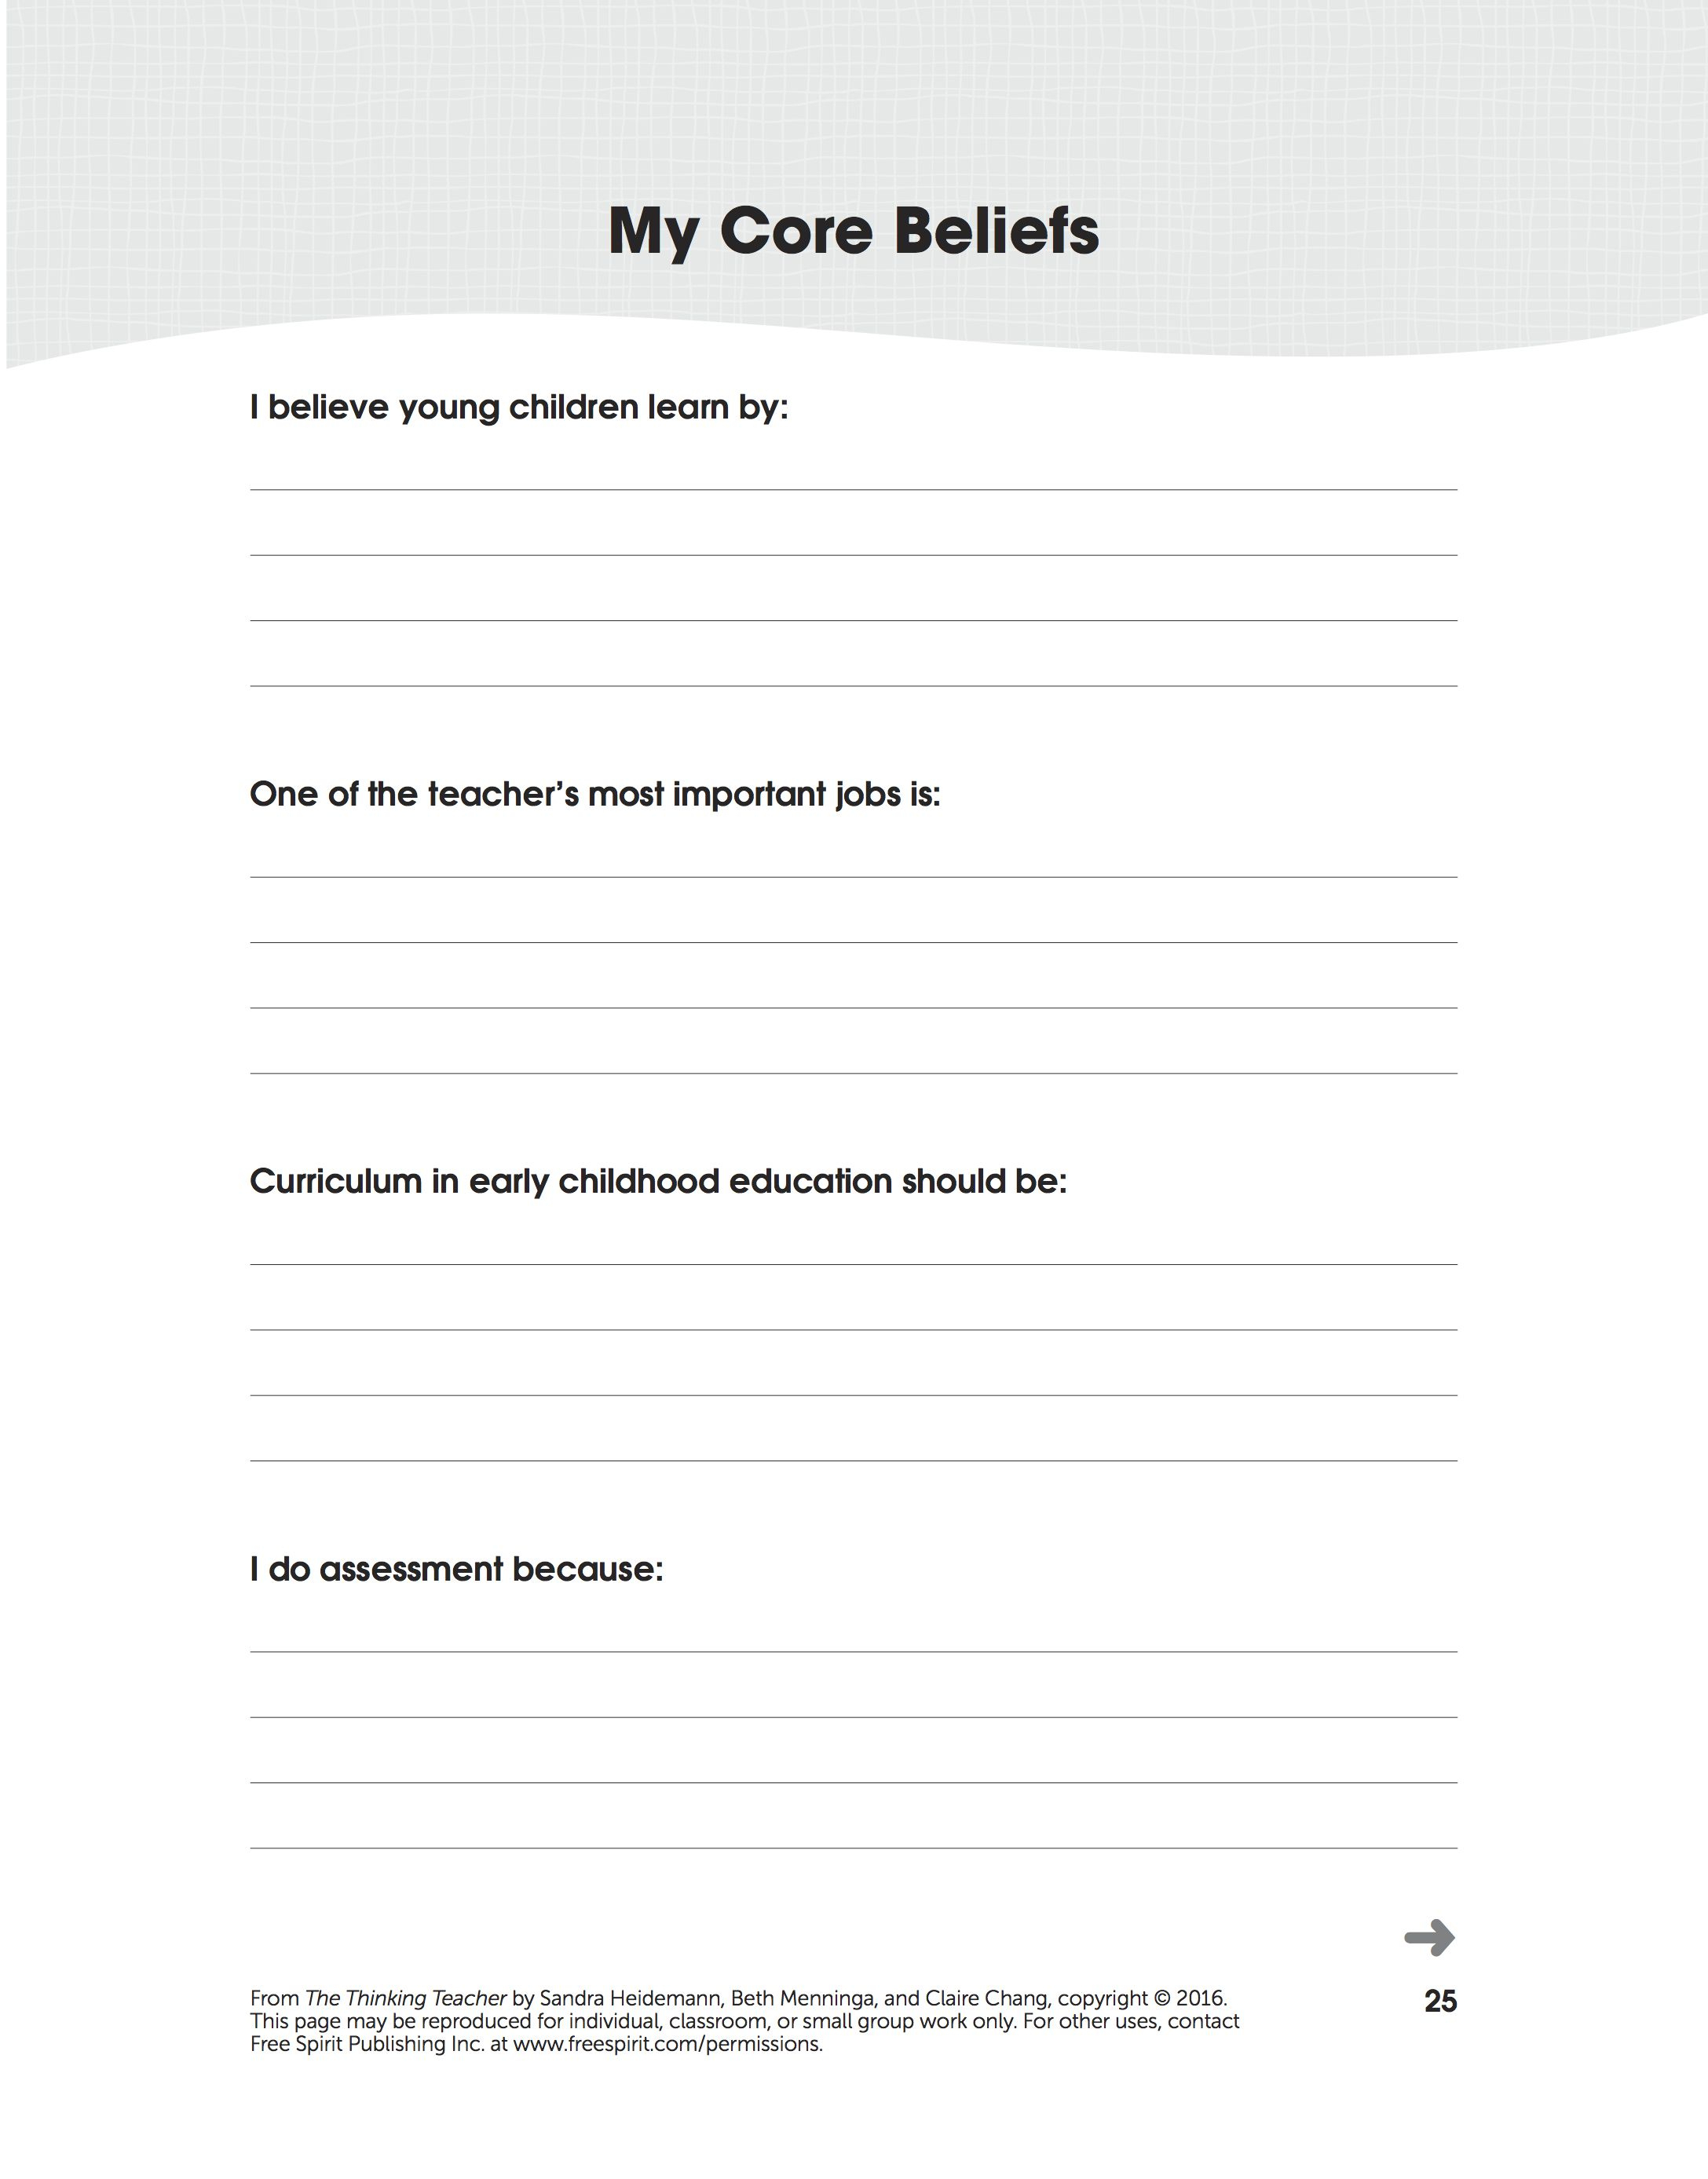 cbt worksheets for depression pdf